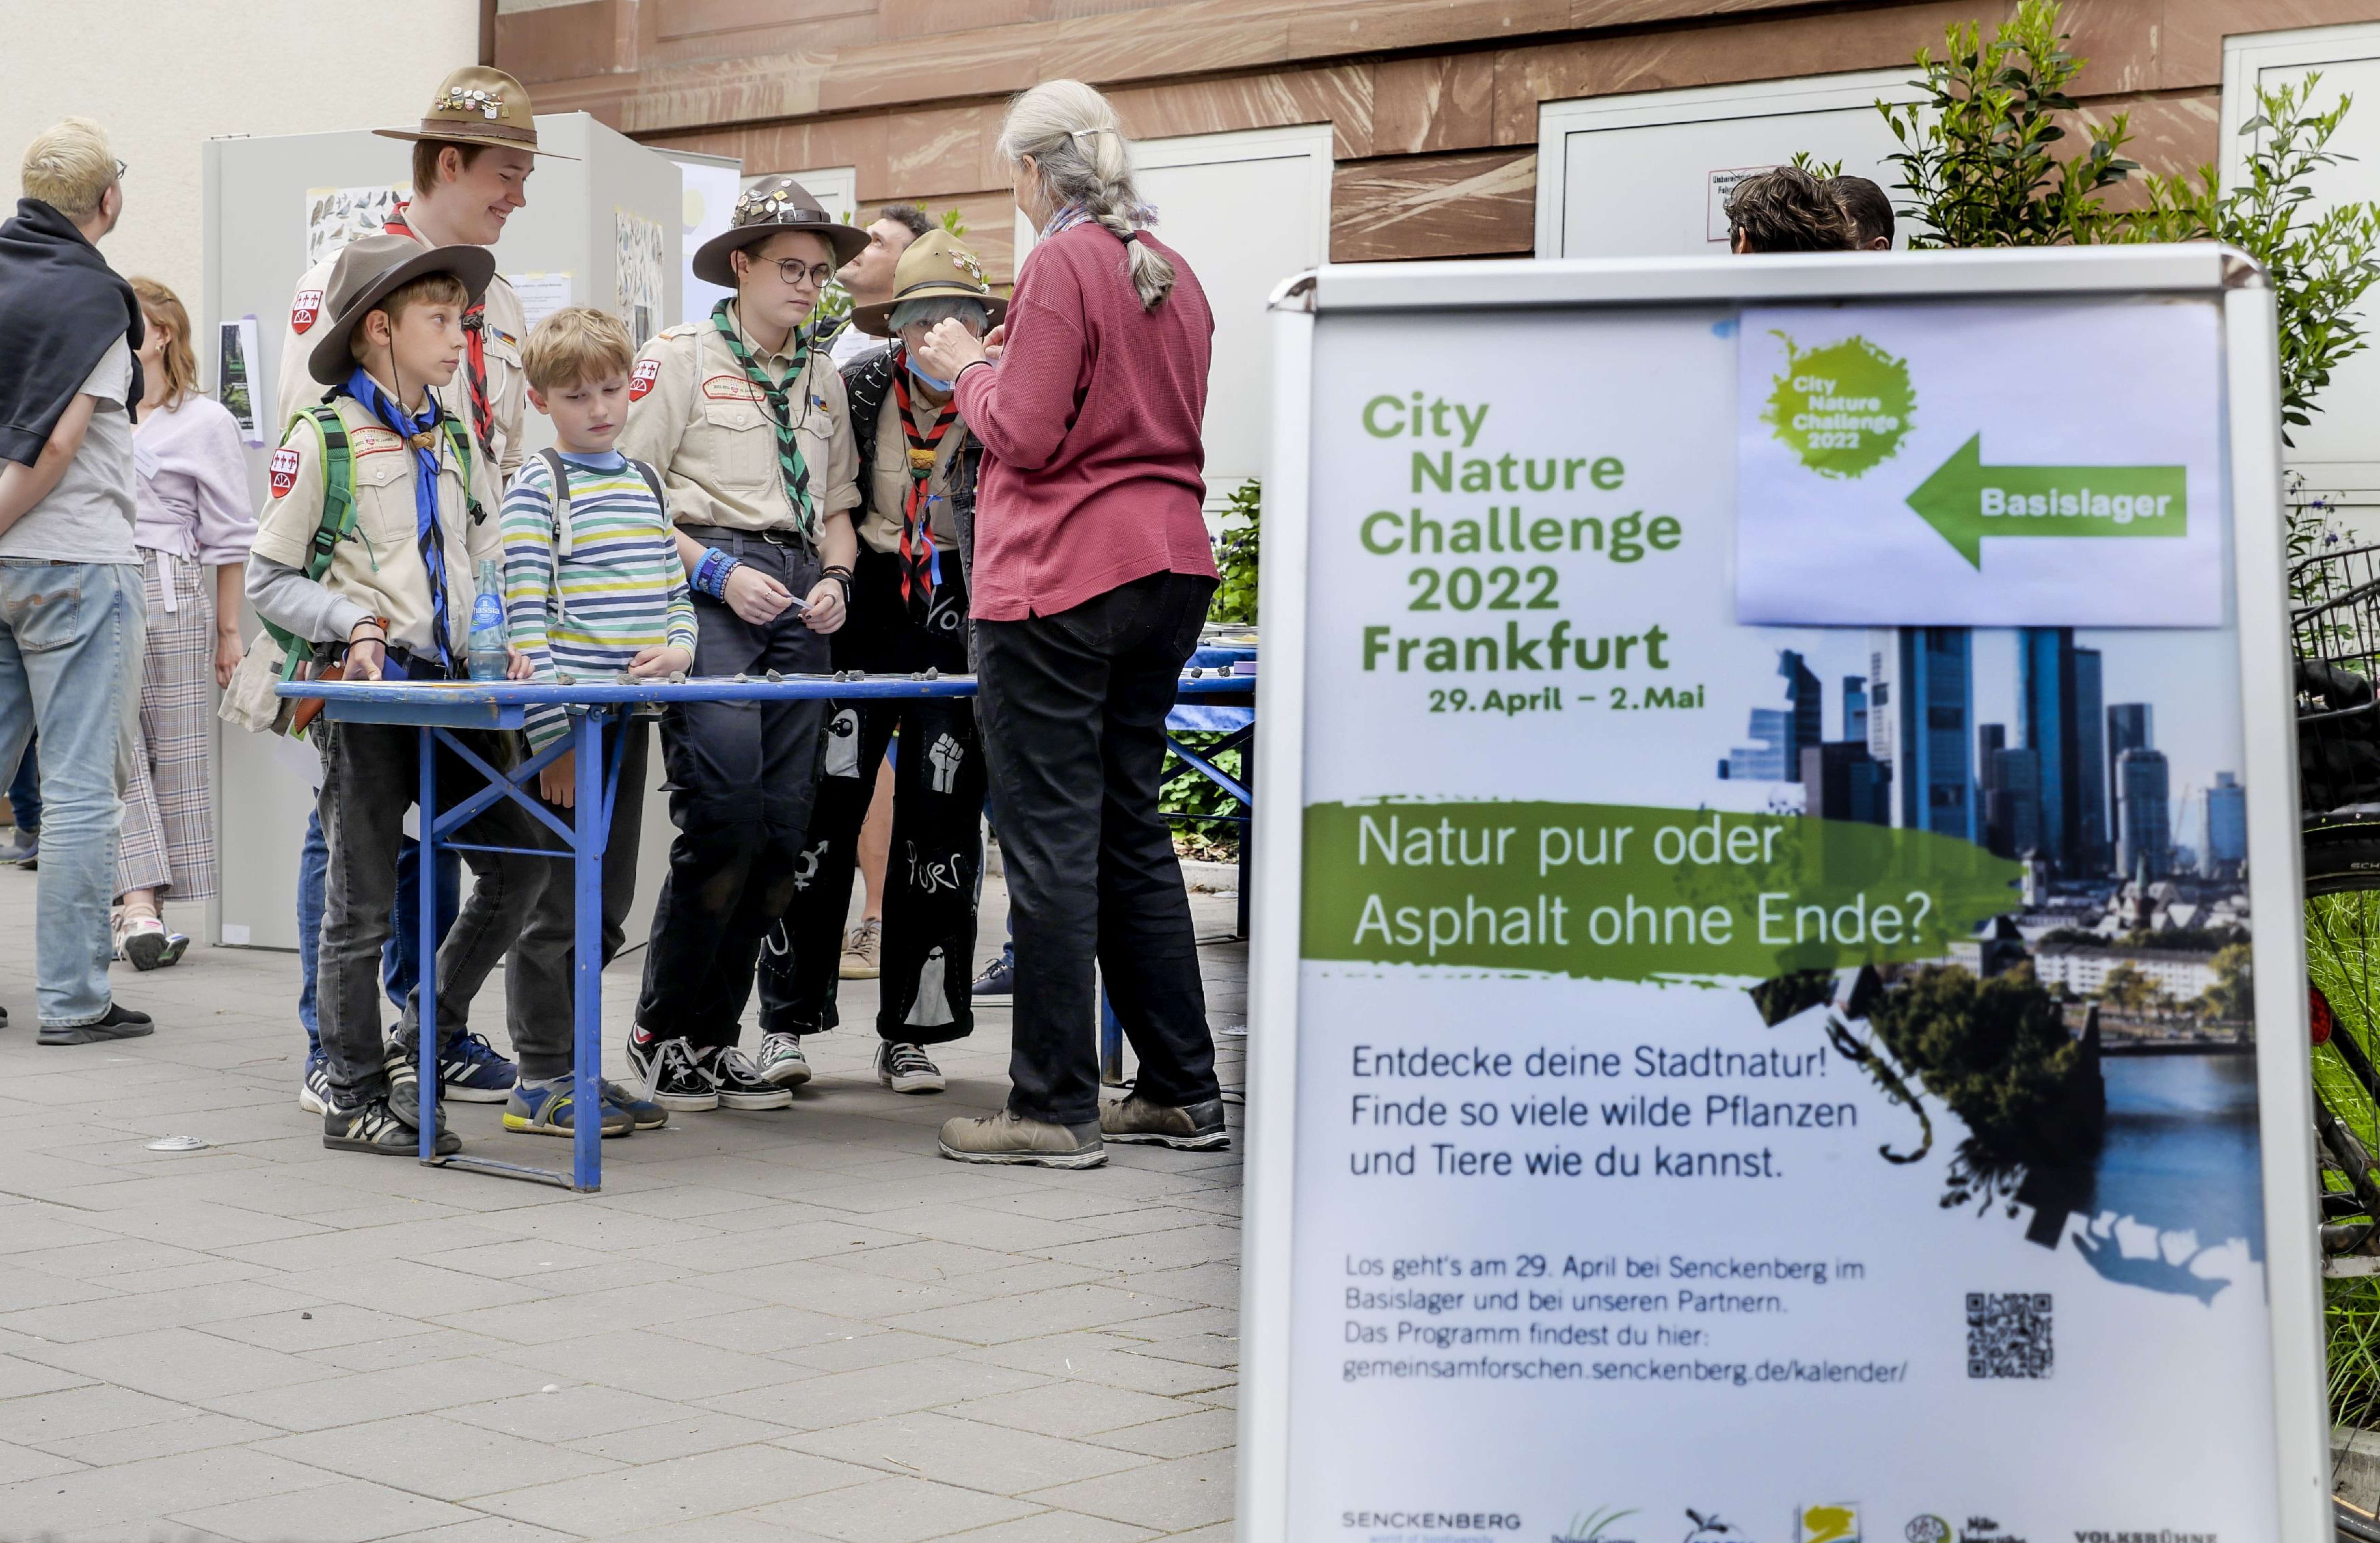 City Nature Challenge in Frankfurt